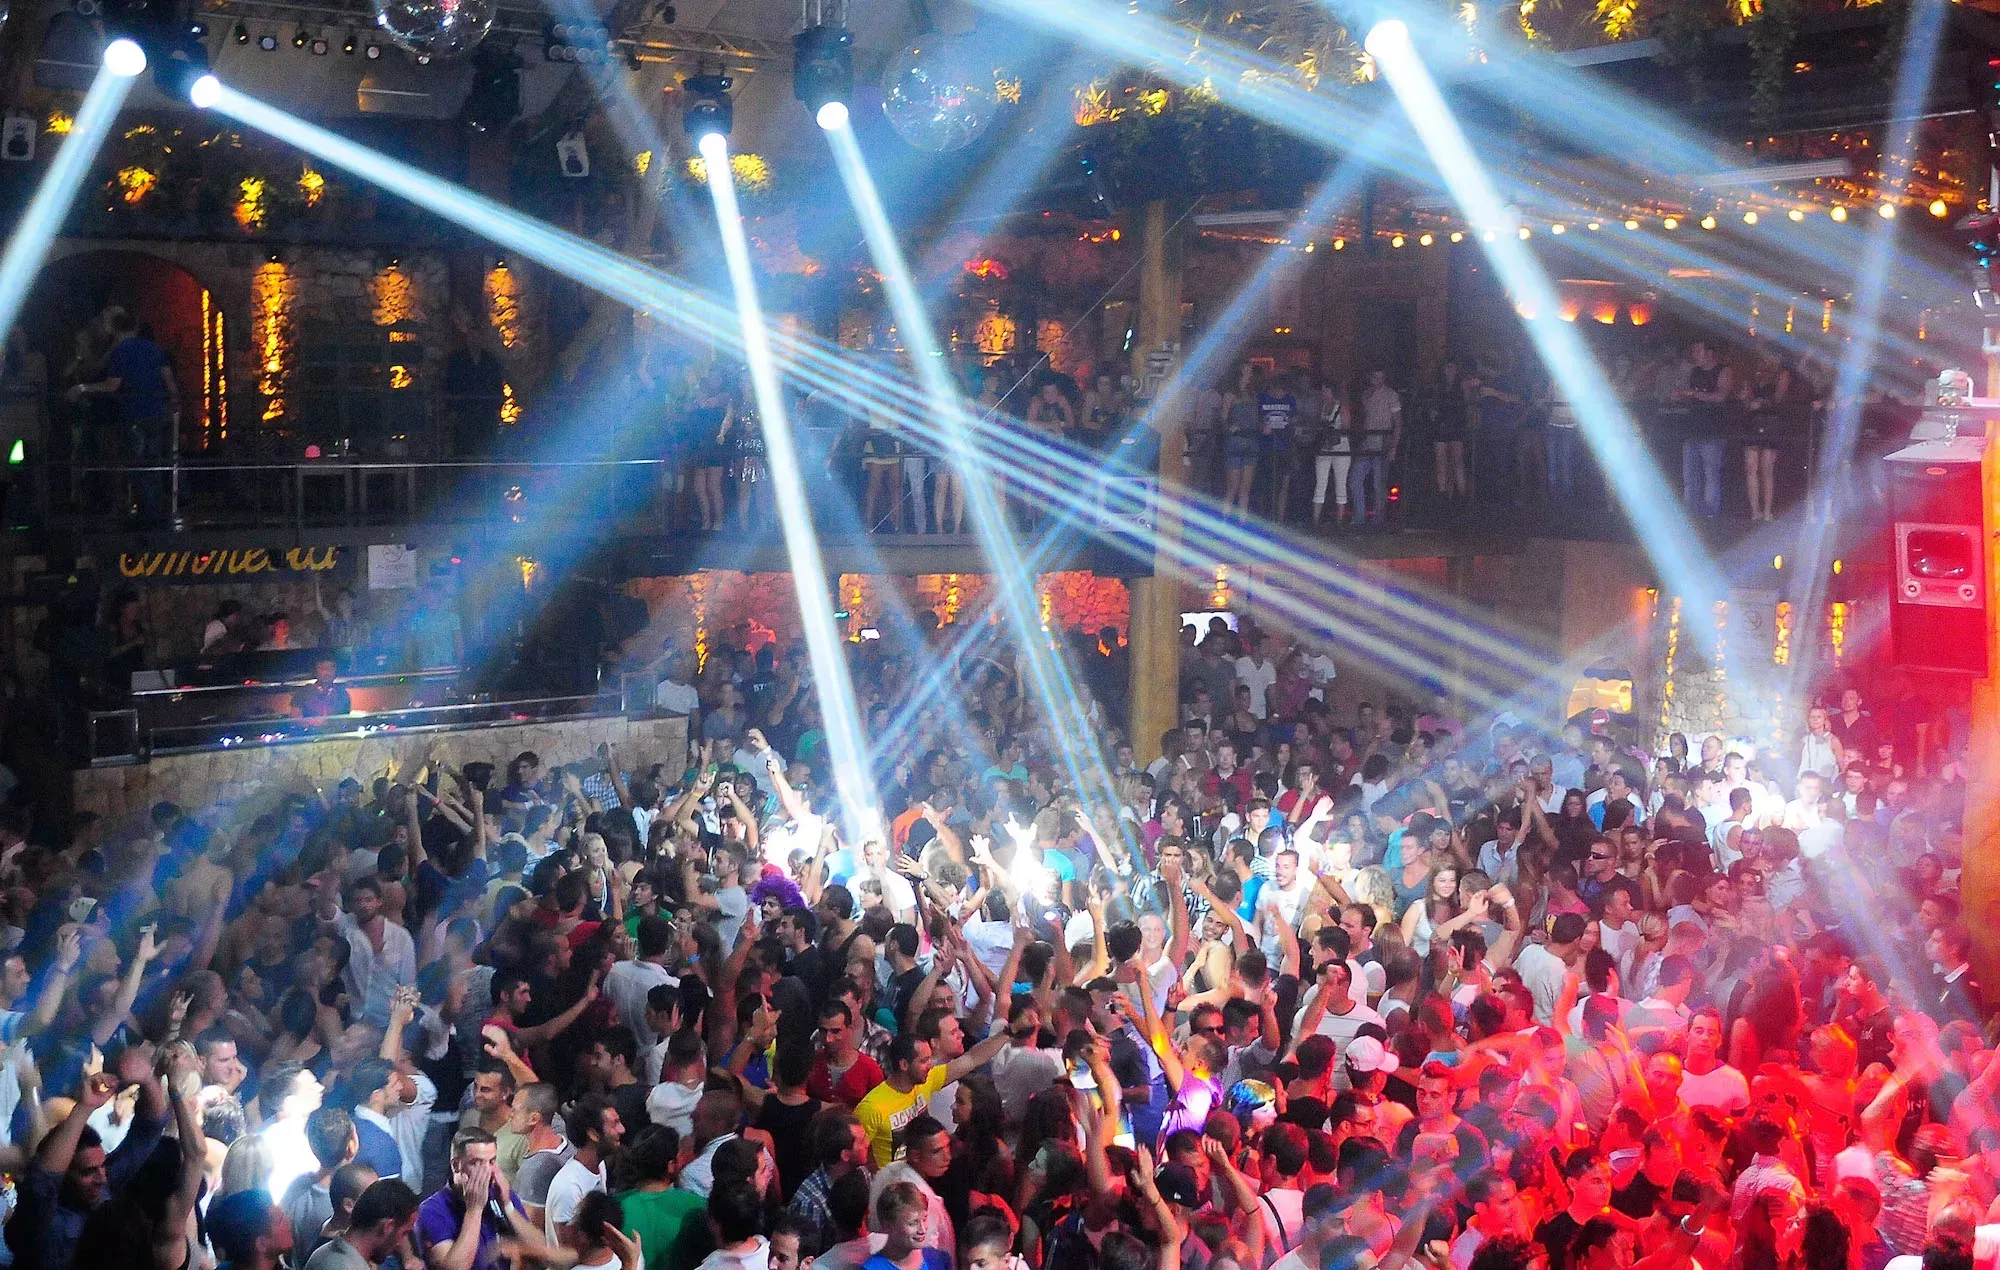 Los aficionados a la música en el club Amnesia de Ibiza recaudan dinero bailando toda la noche